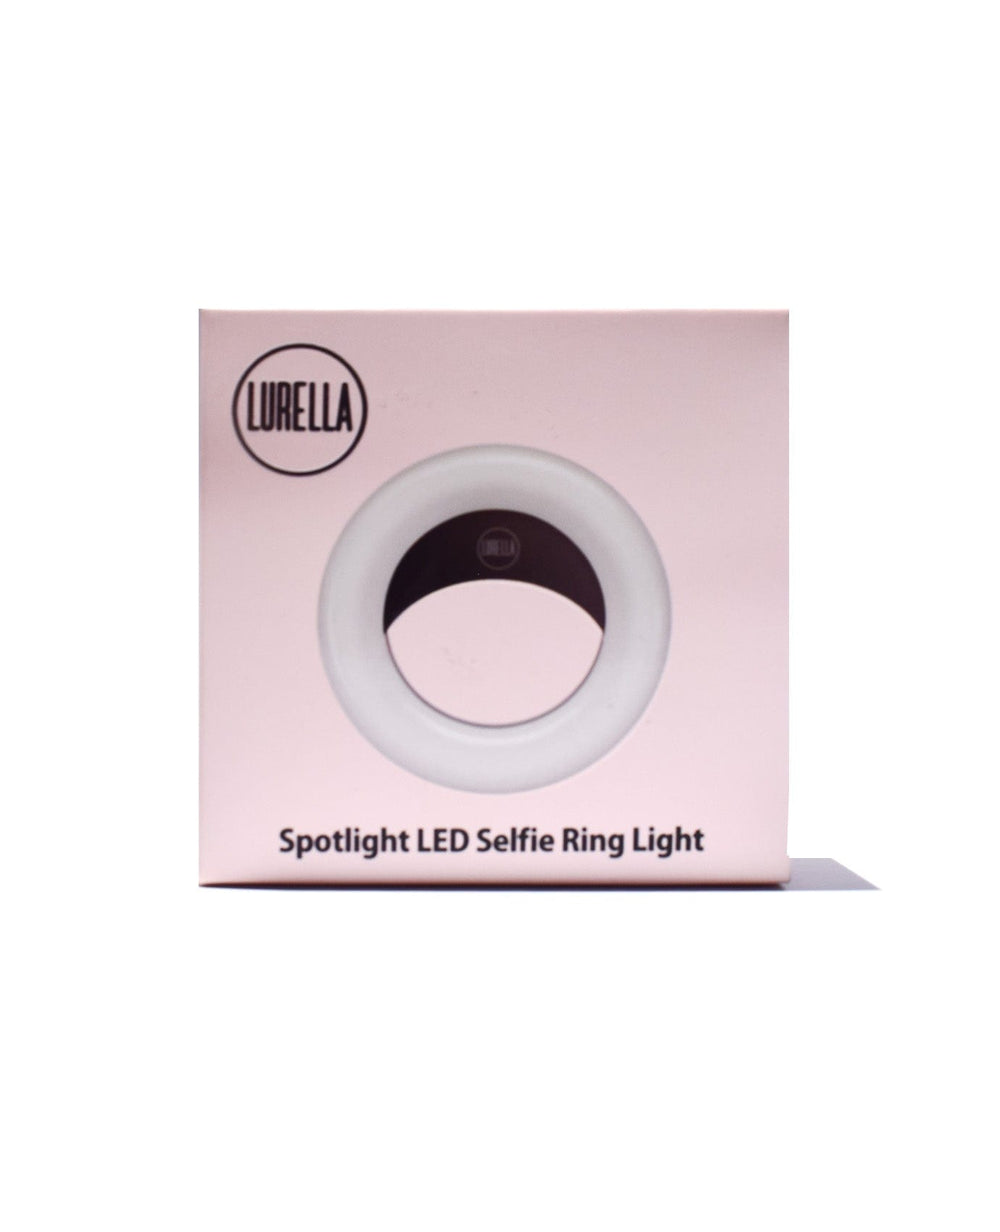 Lurella Spotlight Led Selfie Ring Light